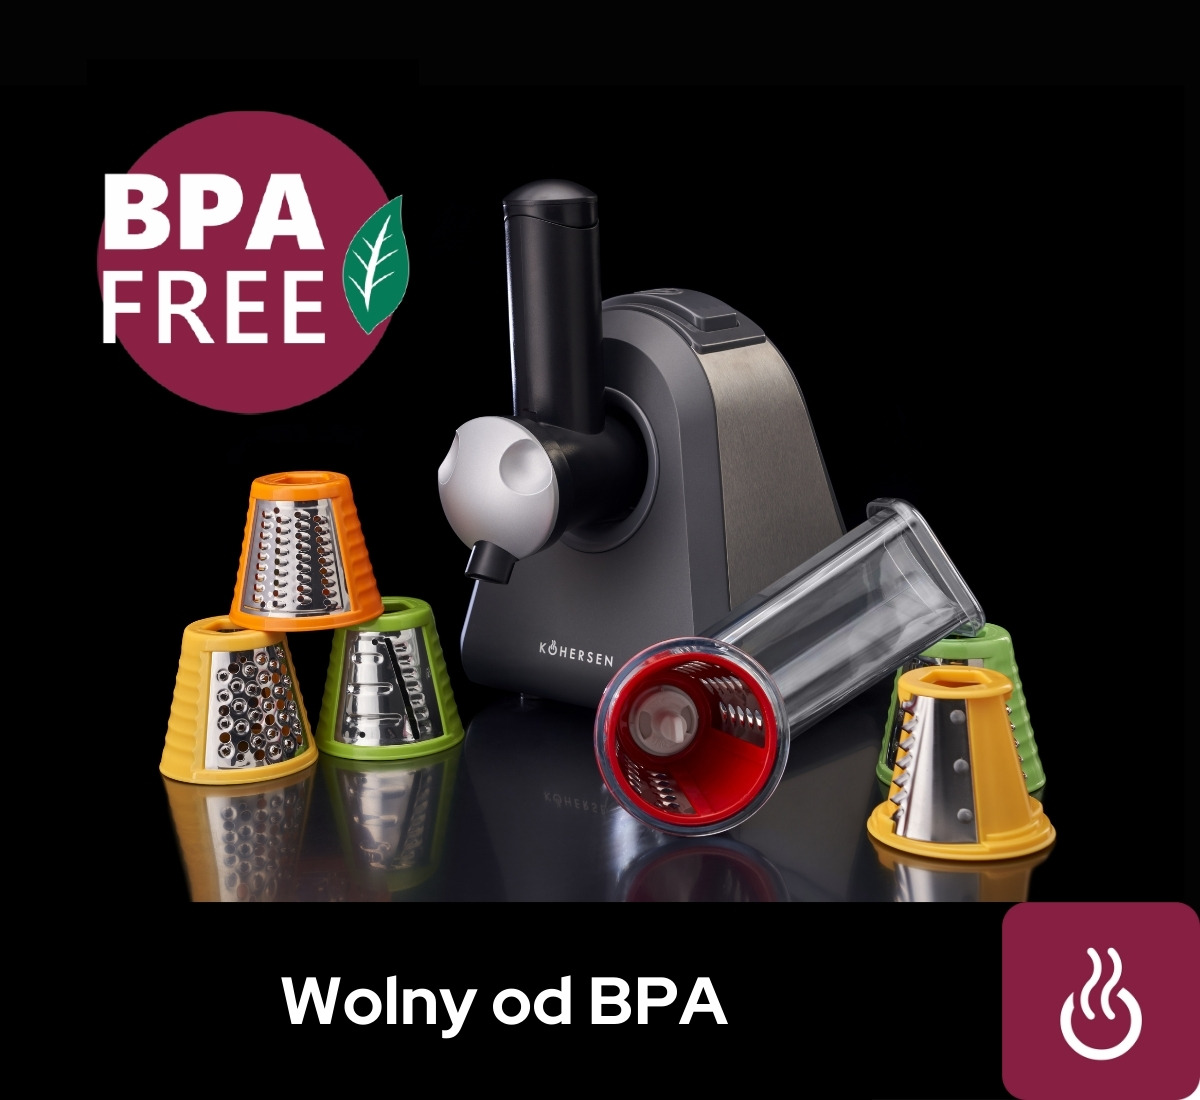 Wolny od BPA